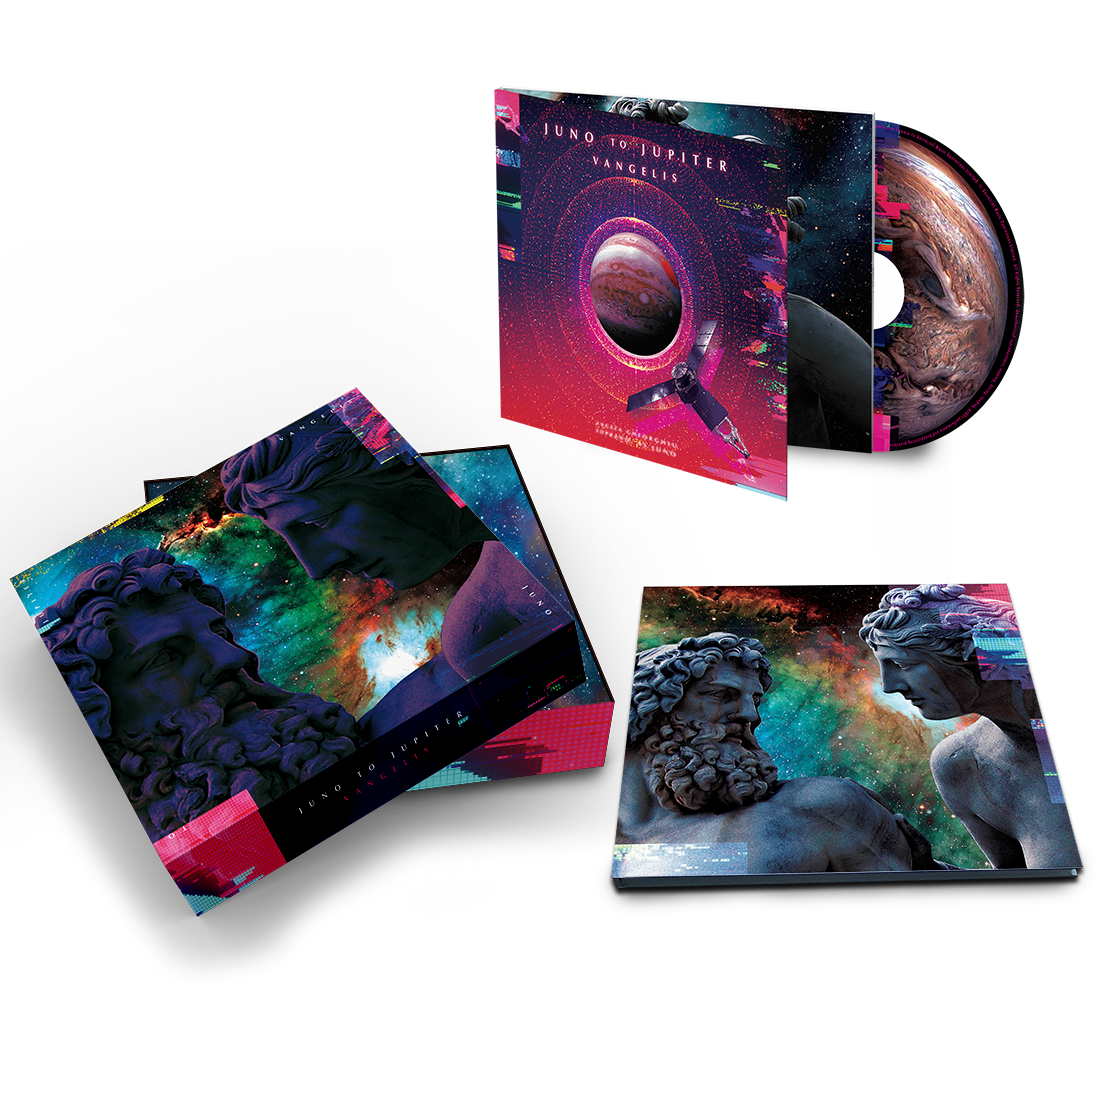 Vangelis - Juno to Jupiter: CD Boxset